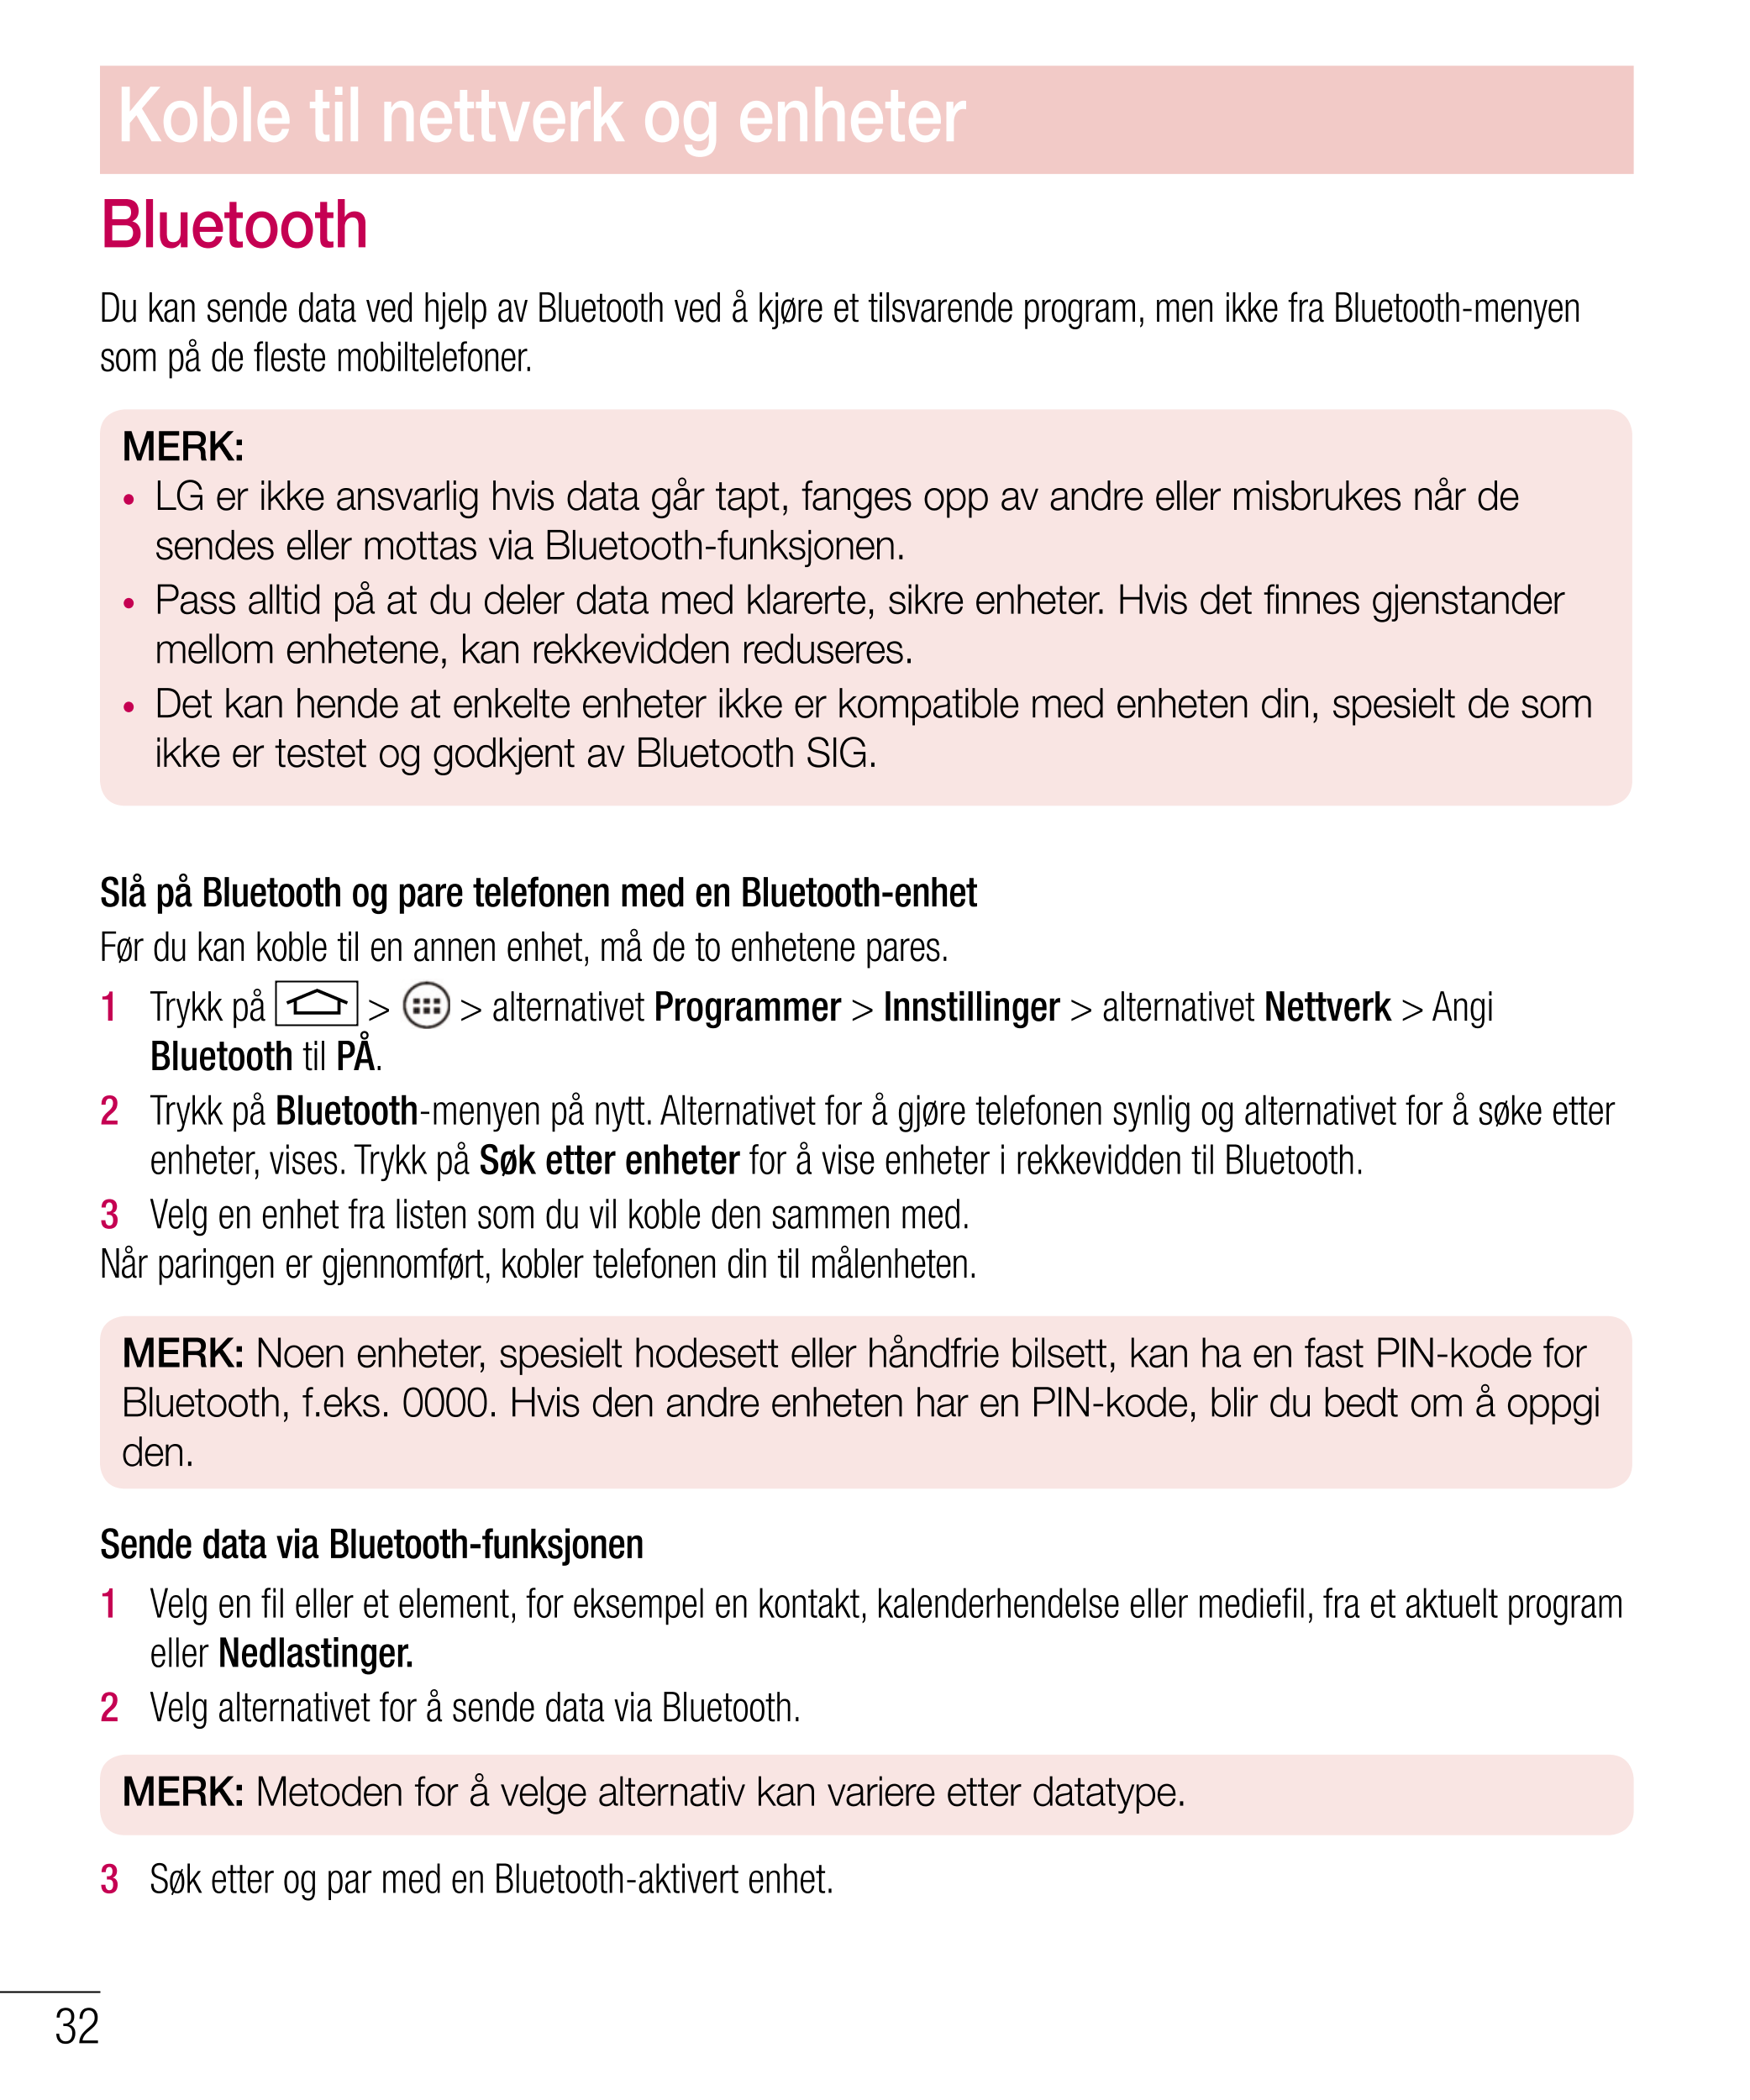 Koble til nettverk og enheter
Bluetooth
Du kan sende data ved hjelp av Bluetooth ved å kjøre et tilsvarende program, men ikke fr